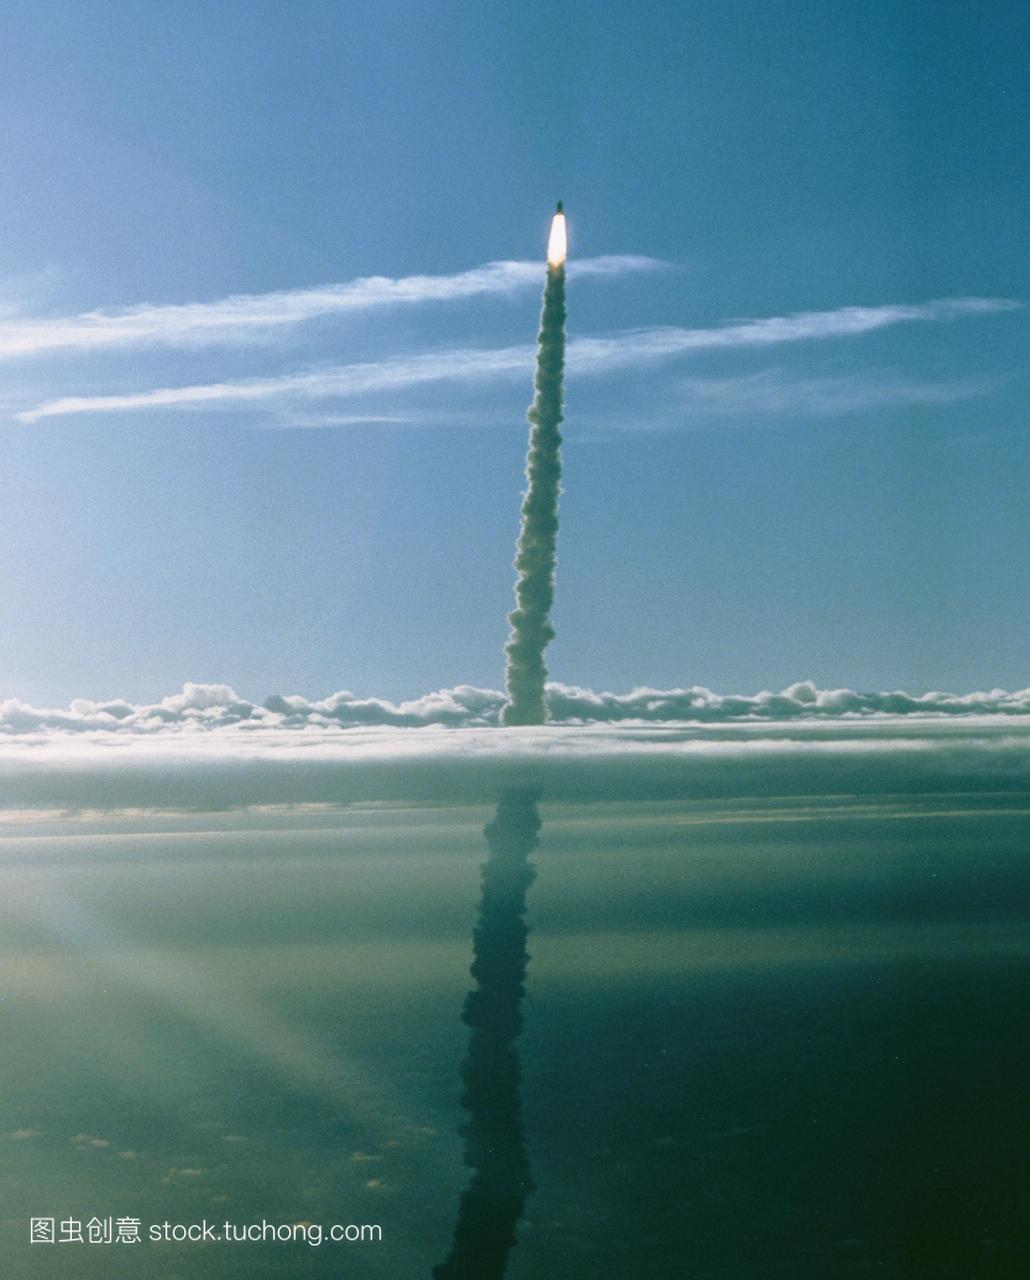 哥伦比亚号航天飞机于1990年1月9日发射升